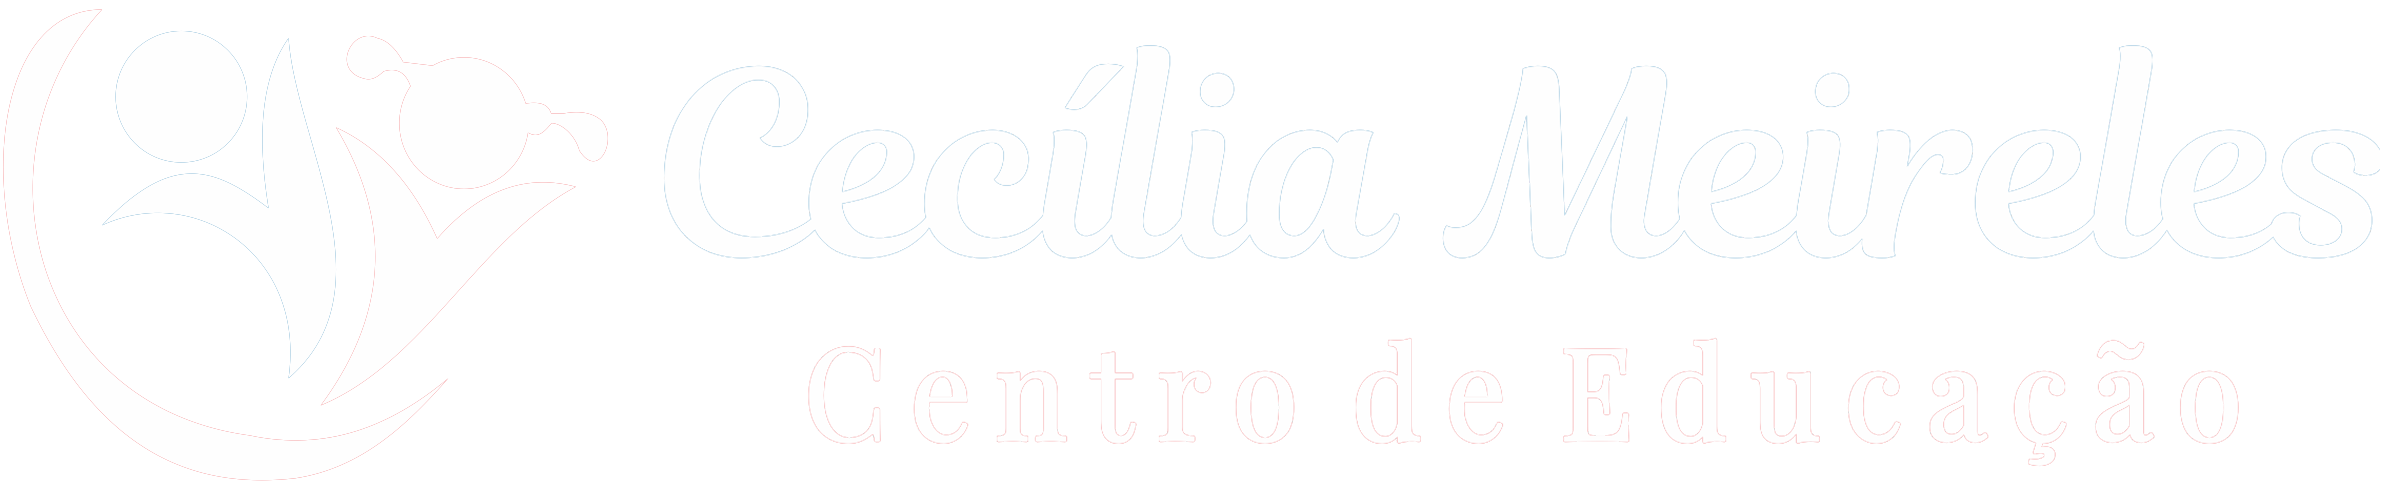 logo-site1